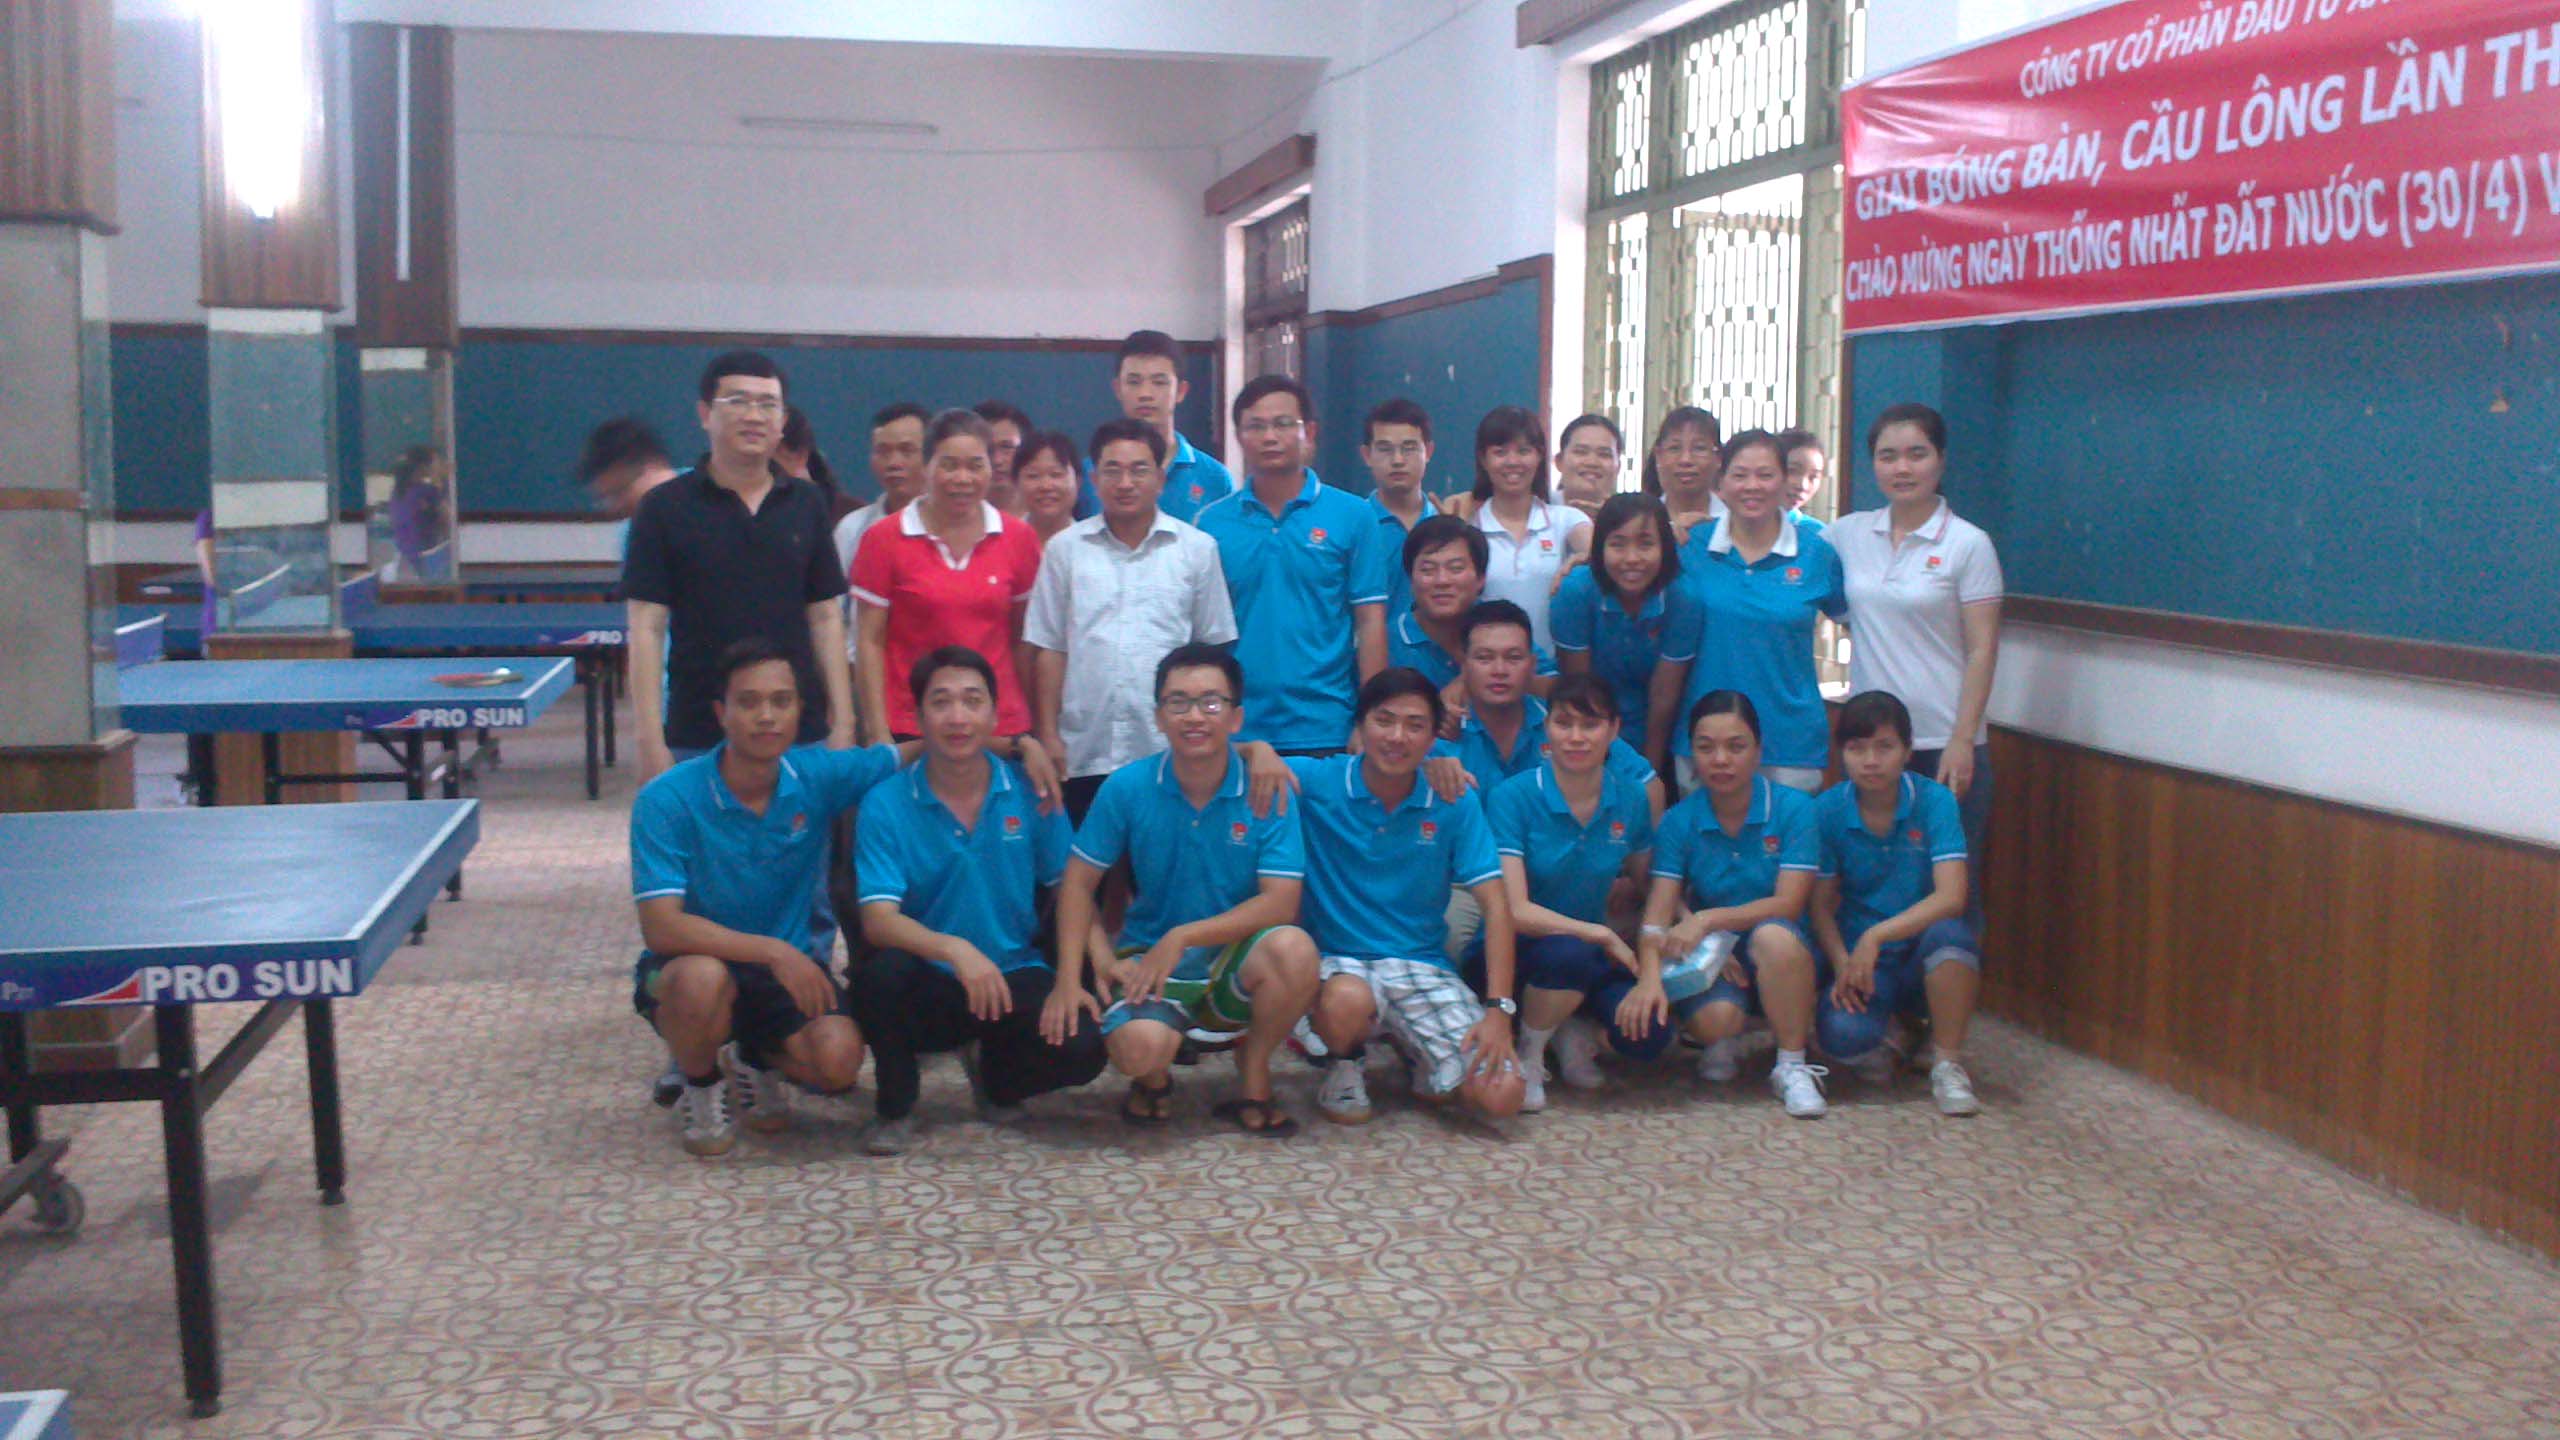 IDICO-CONAC tổ chức Giải Bóng bàn - Cầu lông lần thứ nhất năm 2014